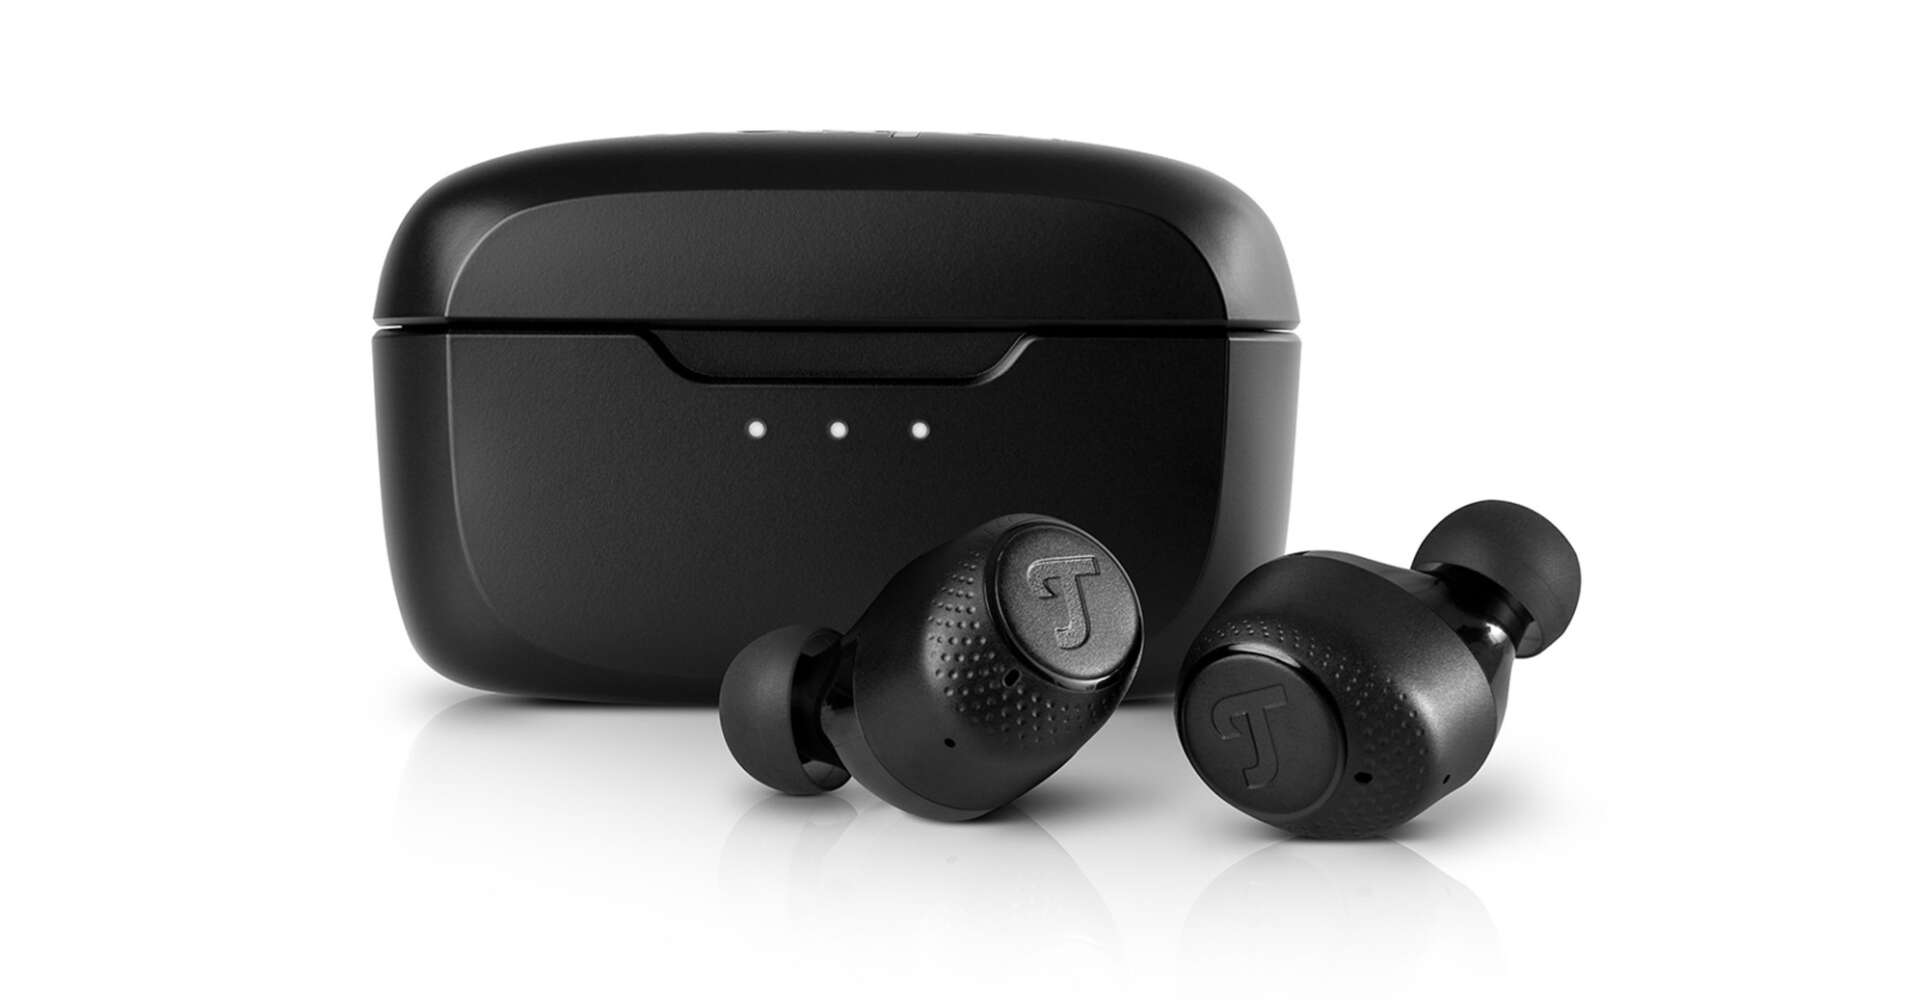 Bild von kabellosen In-Ear-Kopfhörern des Modells "Real Blue TWS 2" von Teufel